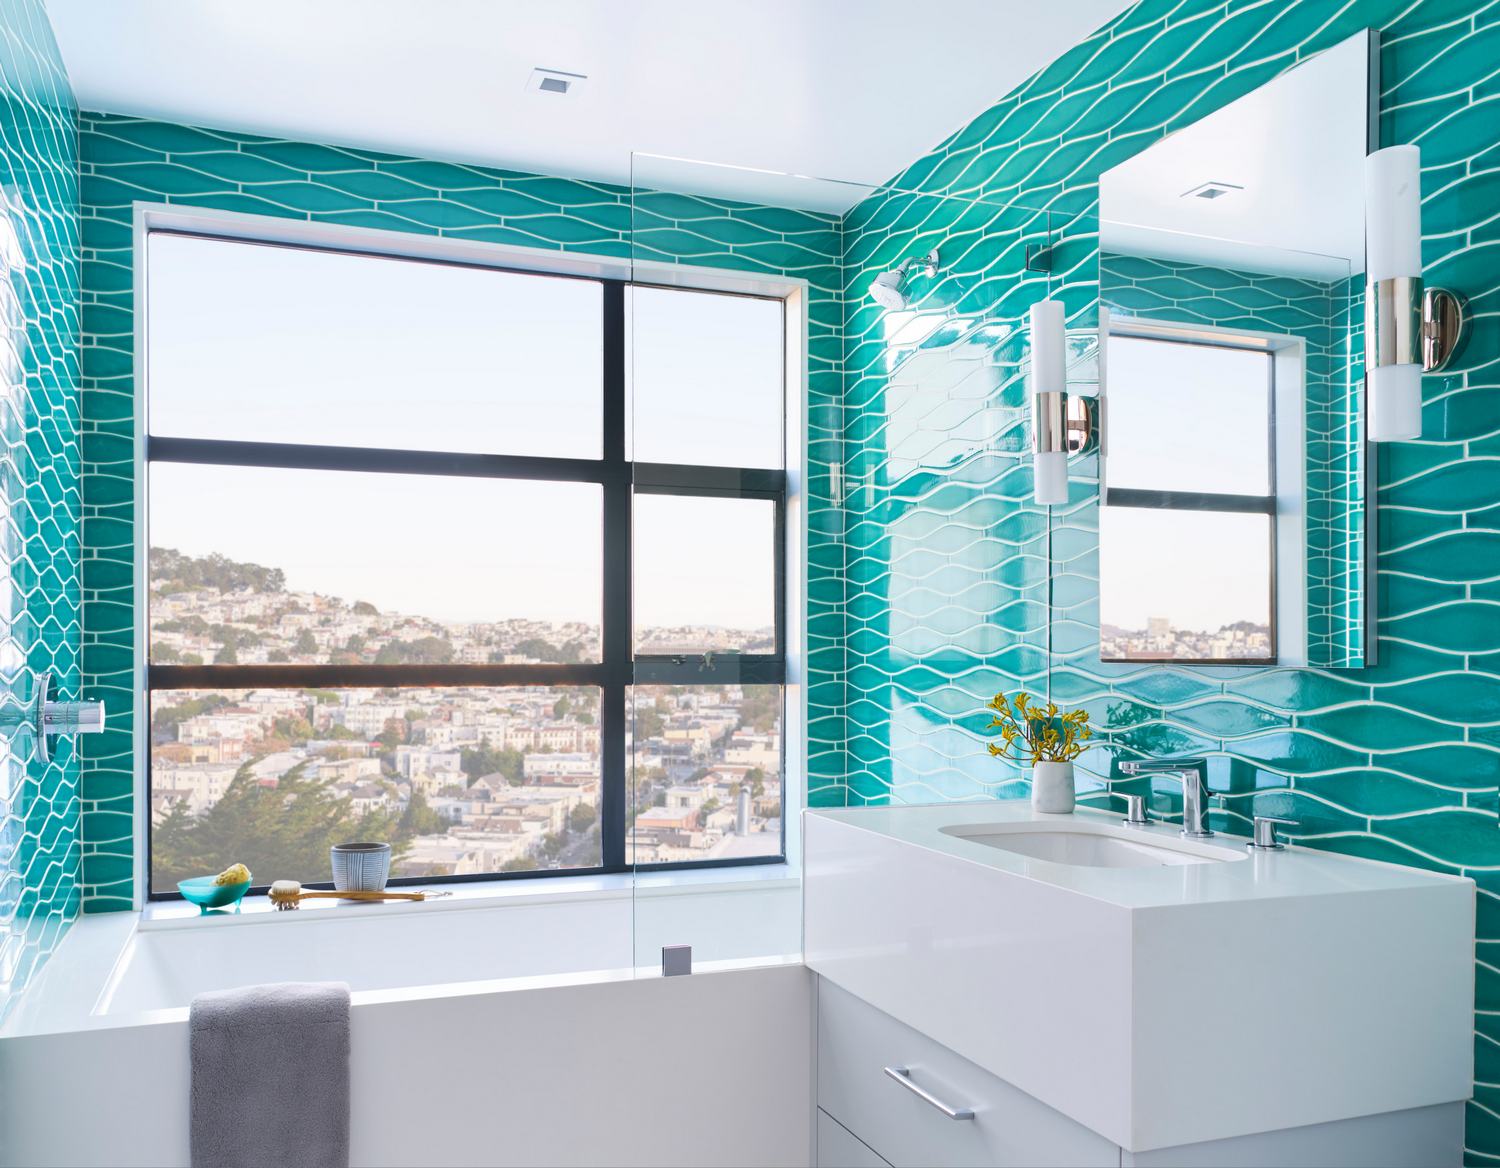 türkiz - 14 látványos szín ötlet új fürdőszoba elevenebb, vidámabb hangulatú dekorációjához